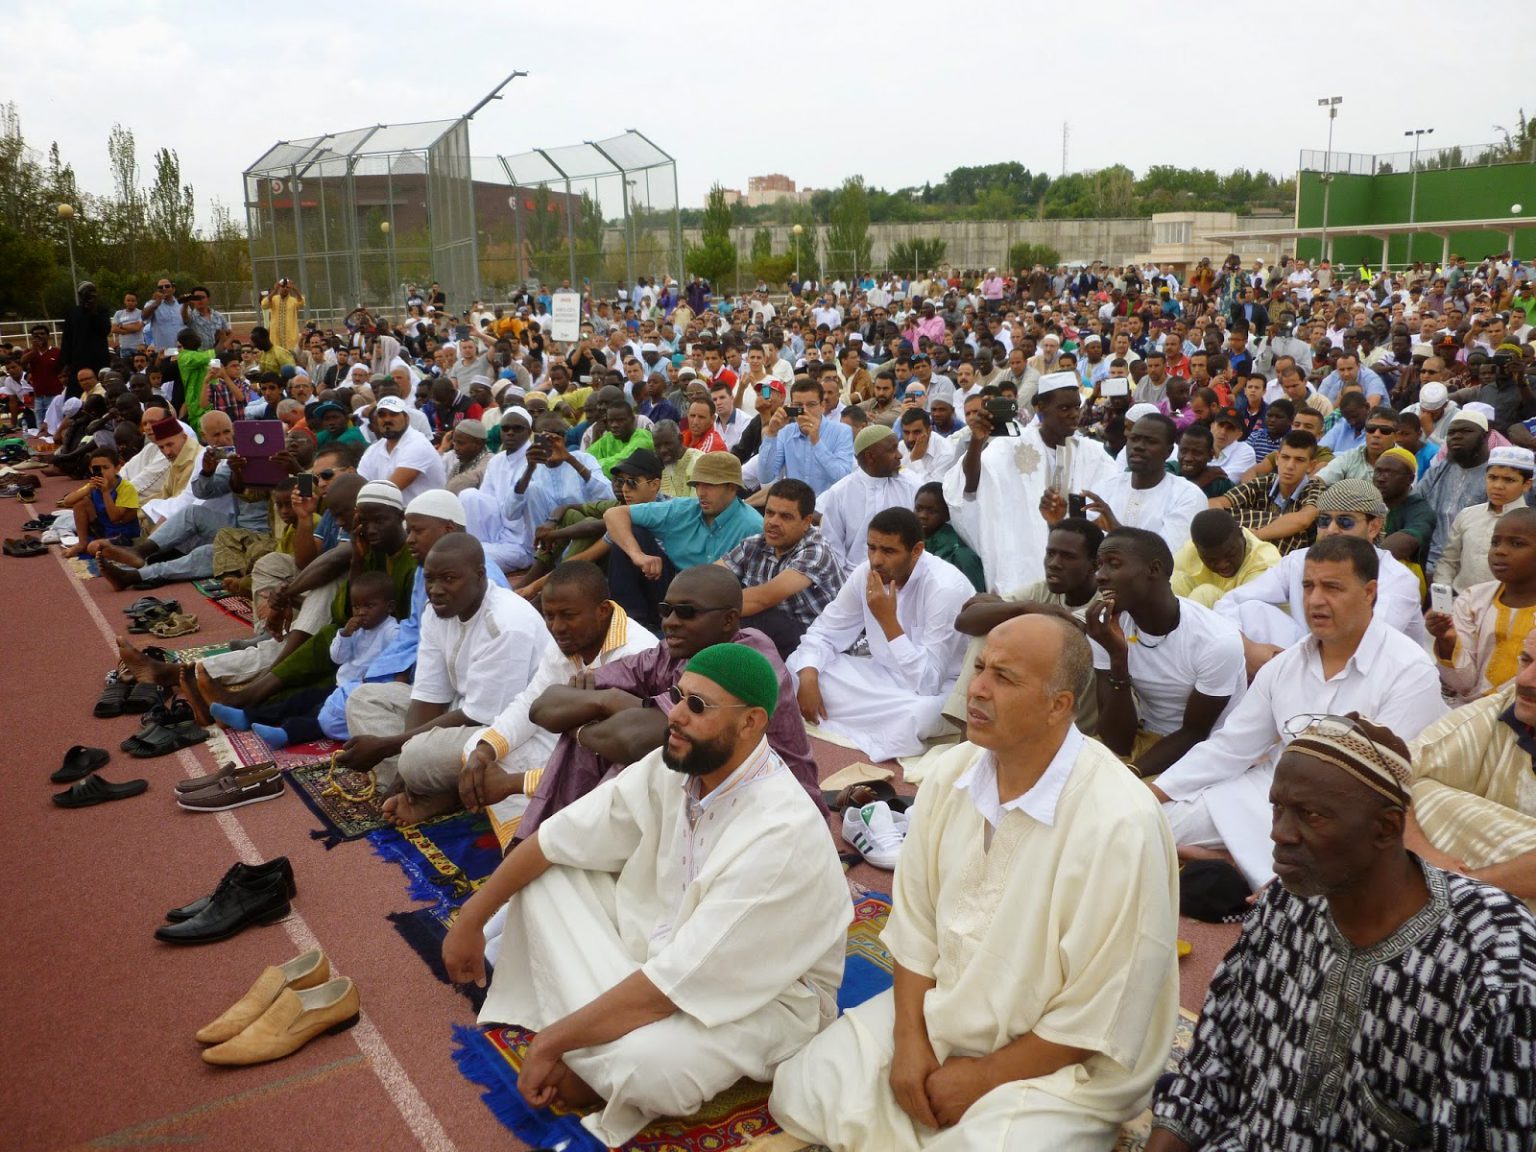 m-s-de-3-000-musulmanes-celebran-en-zaragoza-el-fin-del-ramad-n-ucide